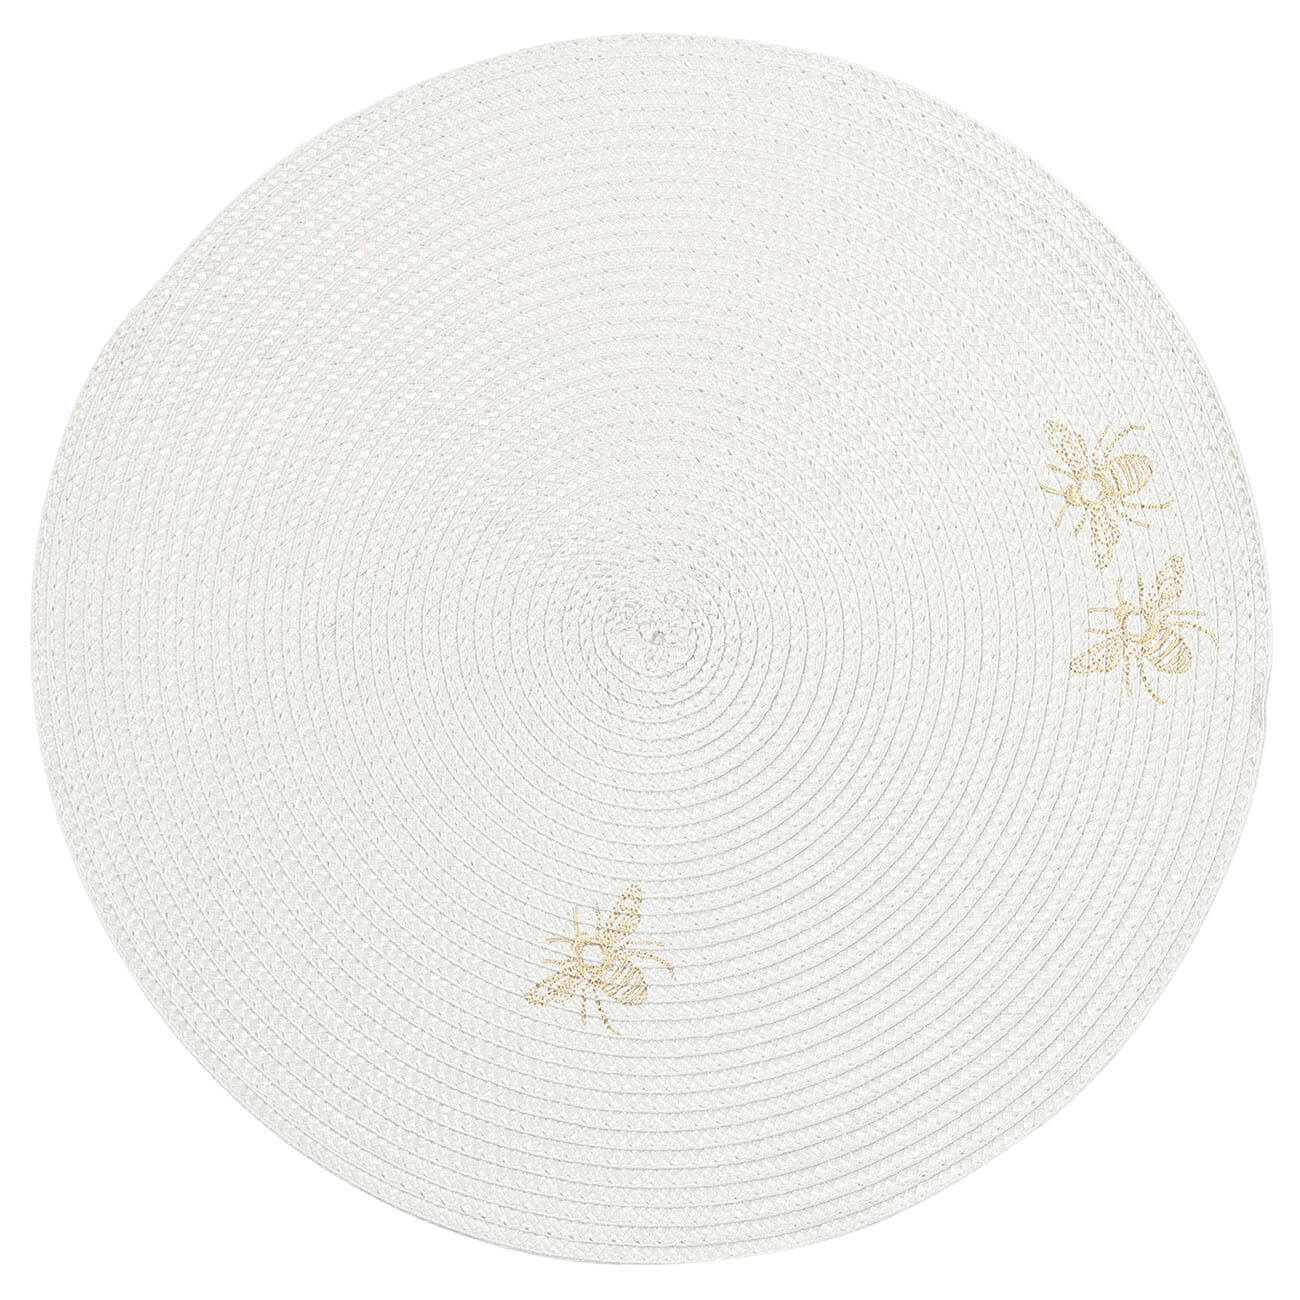 Салфетка под приборы, 38 см, полипропилен/ПЭТ, круглая, светло-серая, Пчелы, Circle embroidery салфетка микрофибра ladina